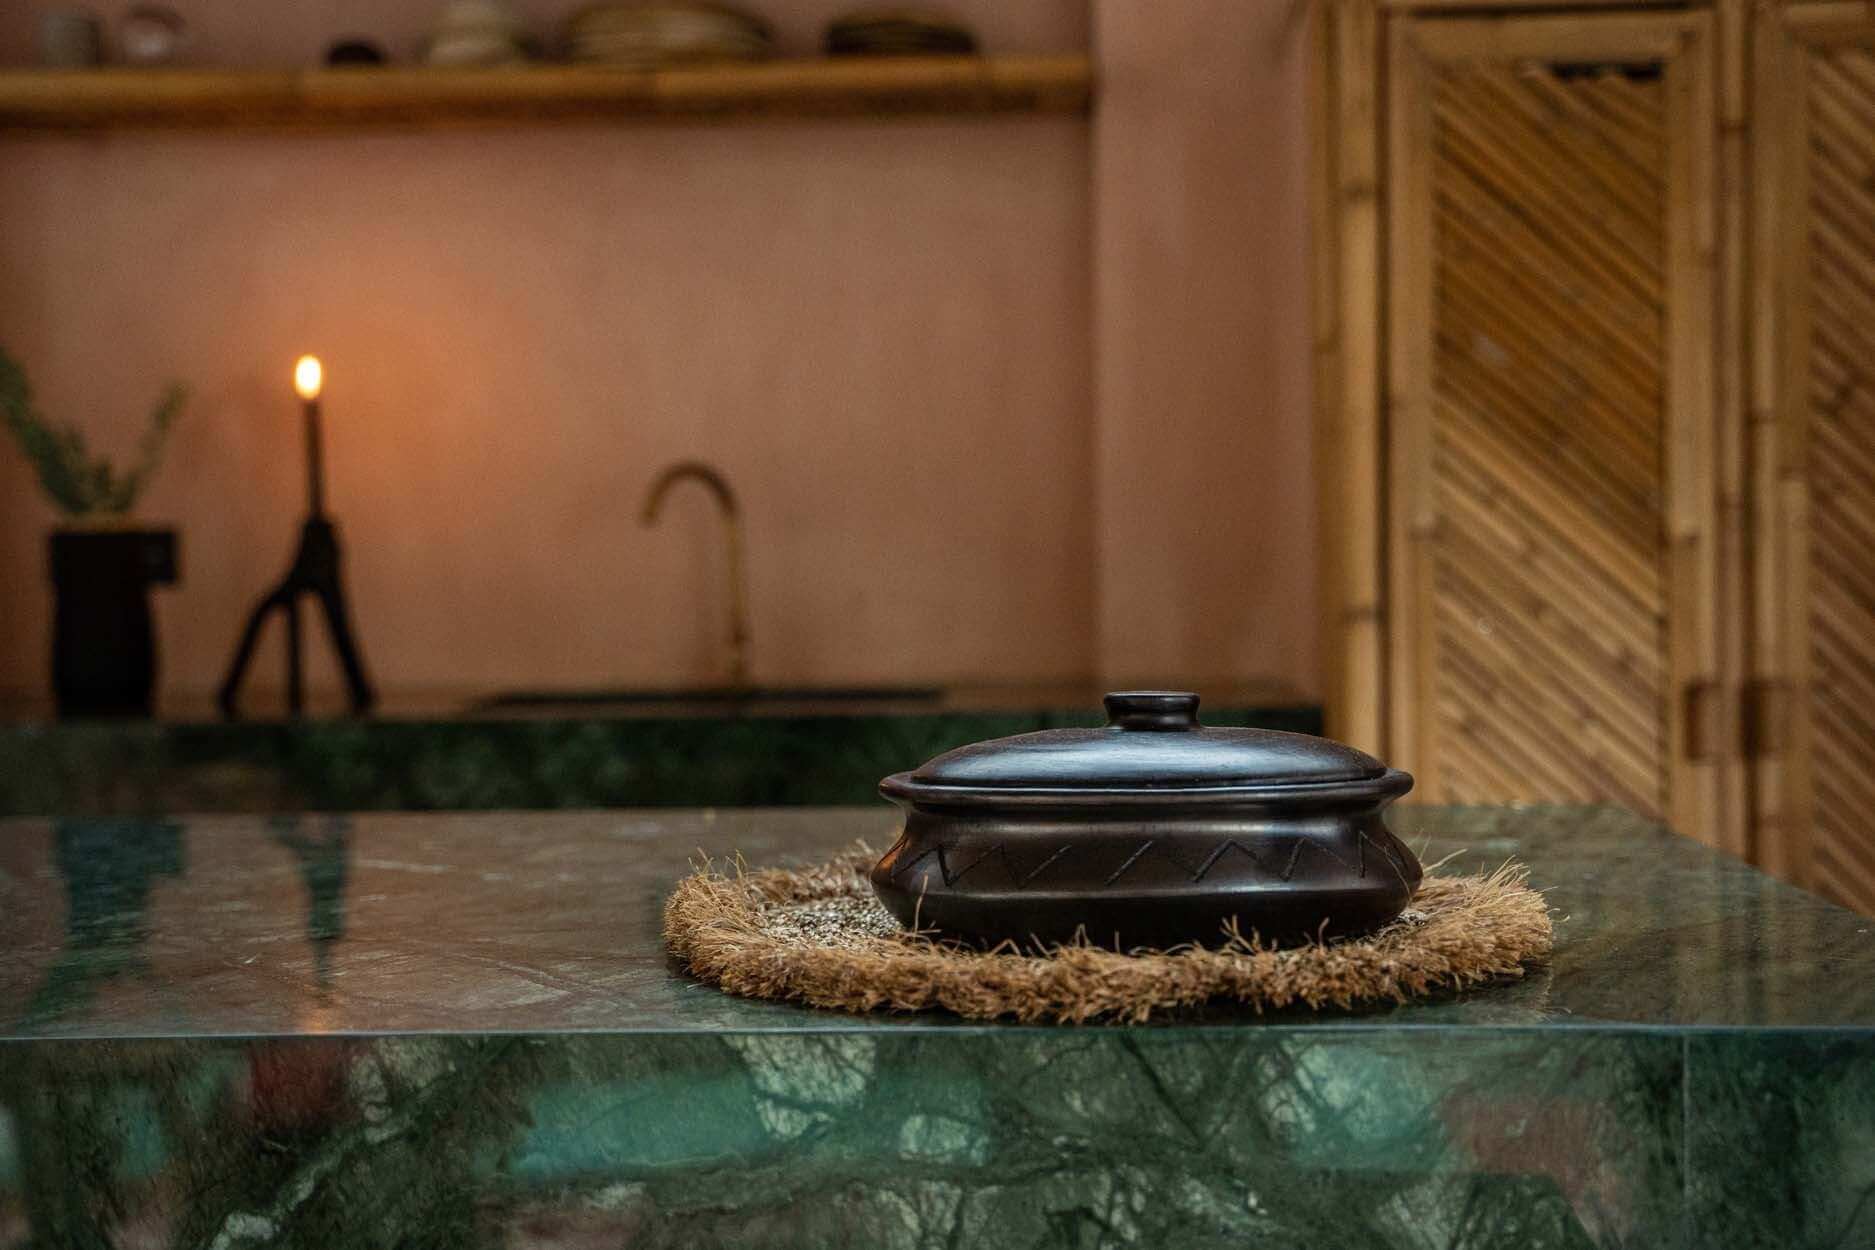 De Burned Ovale Pot Met Patroon - Zwart Bazar Bizar Voor fijnproevers is niets zo fijn als een mooi gedekte tafel met een set mooi gekozen borden, dus deze gebrande ovale pot mag zeker niet ontbreken. Wij houden absoluut van het unieke ontwerp en patroon